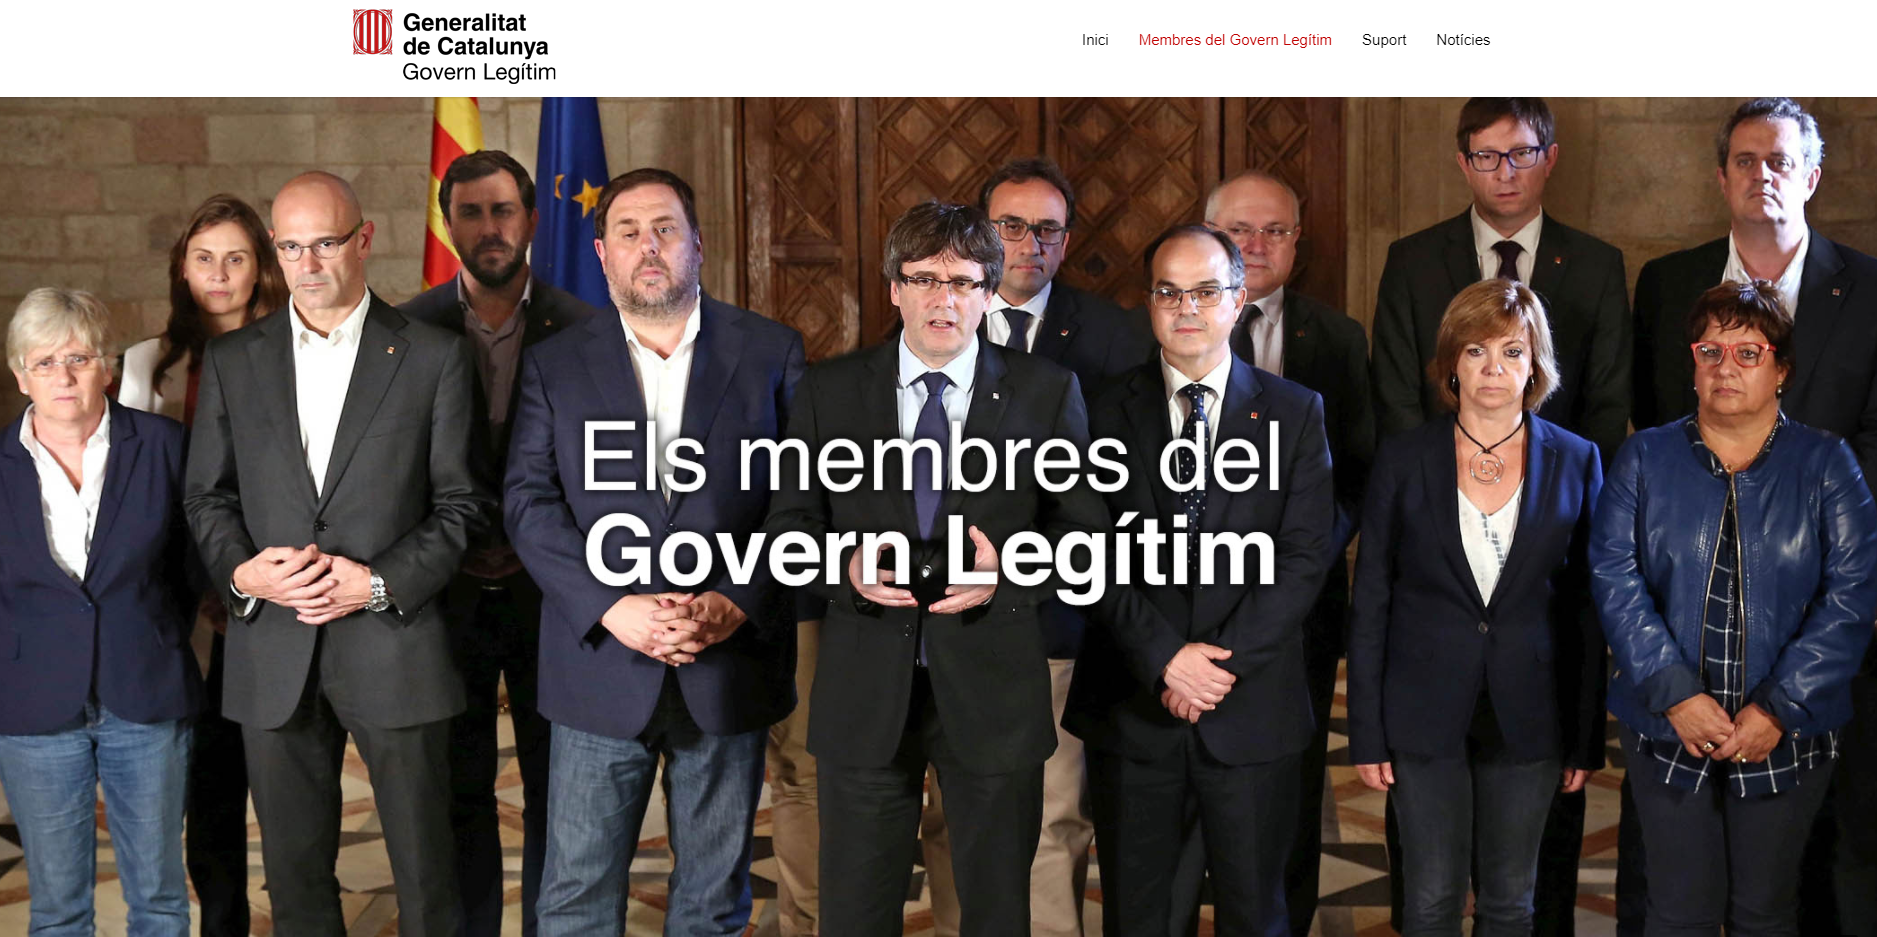 El Govern legítim engega des de Brussel·les la seva pàgina web